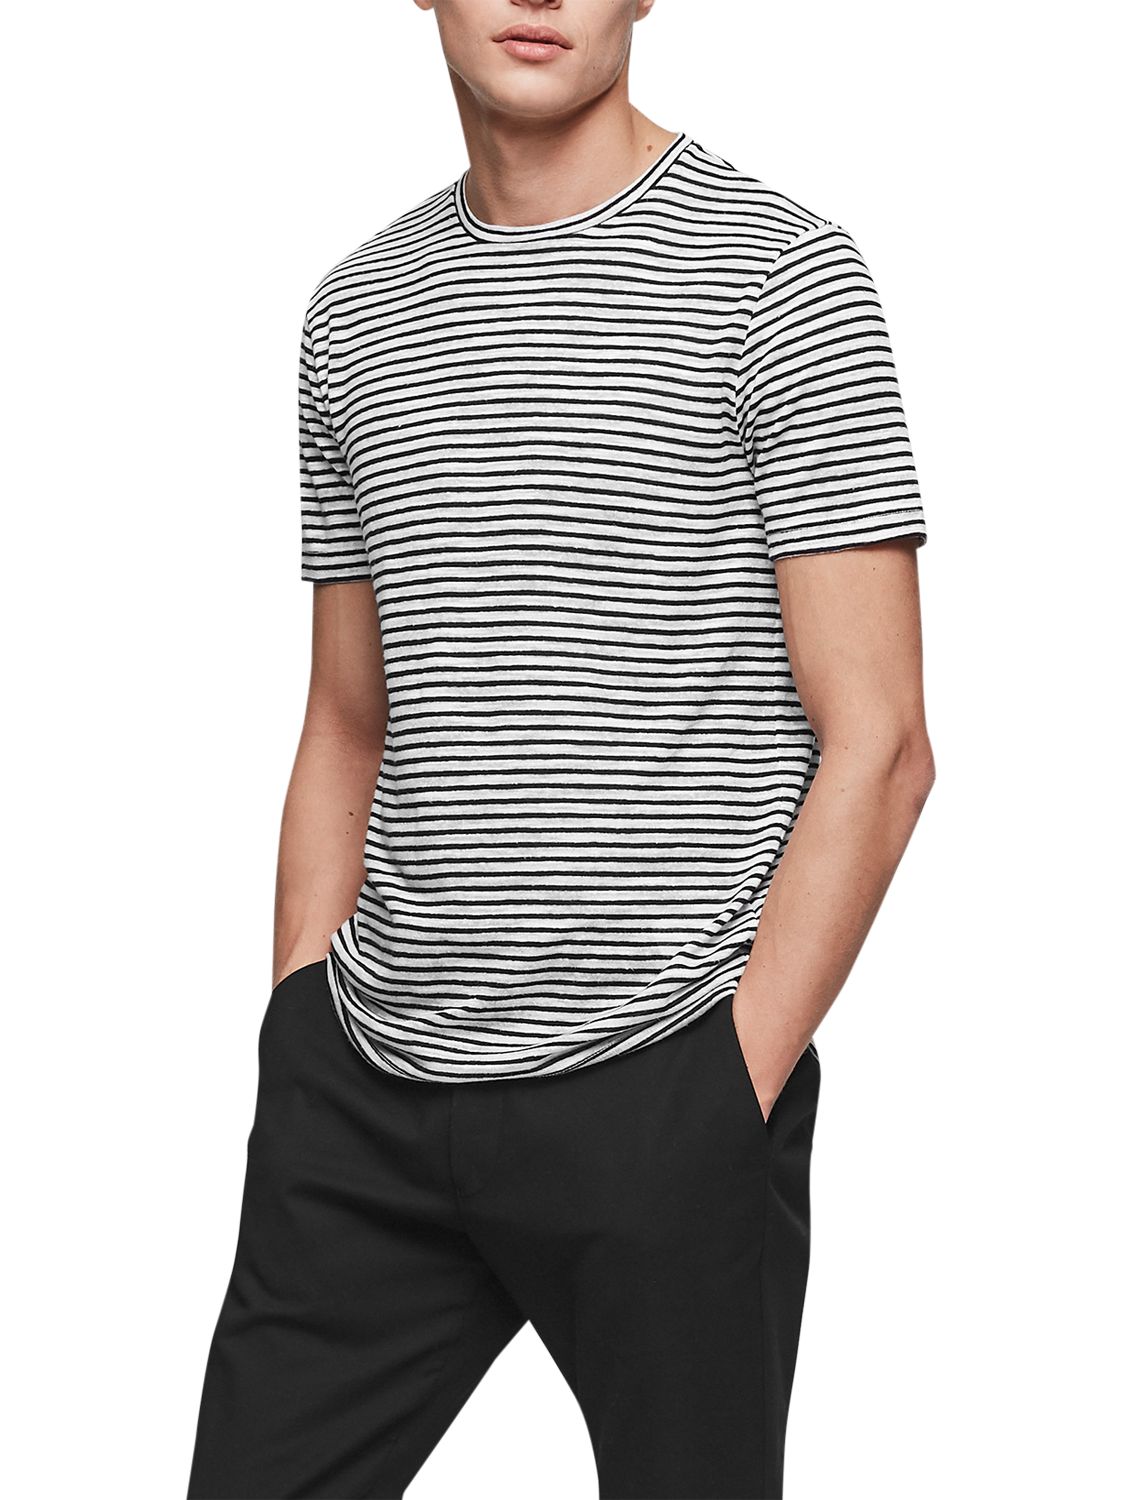 Reiss Dobcot Linen Blend Stripe T-Shirt, Ecru, M